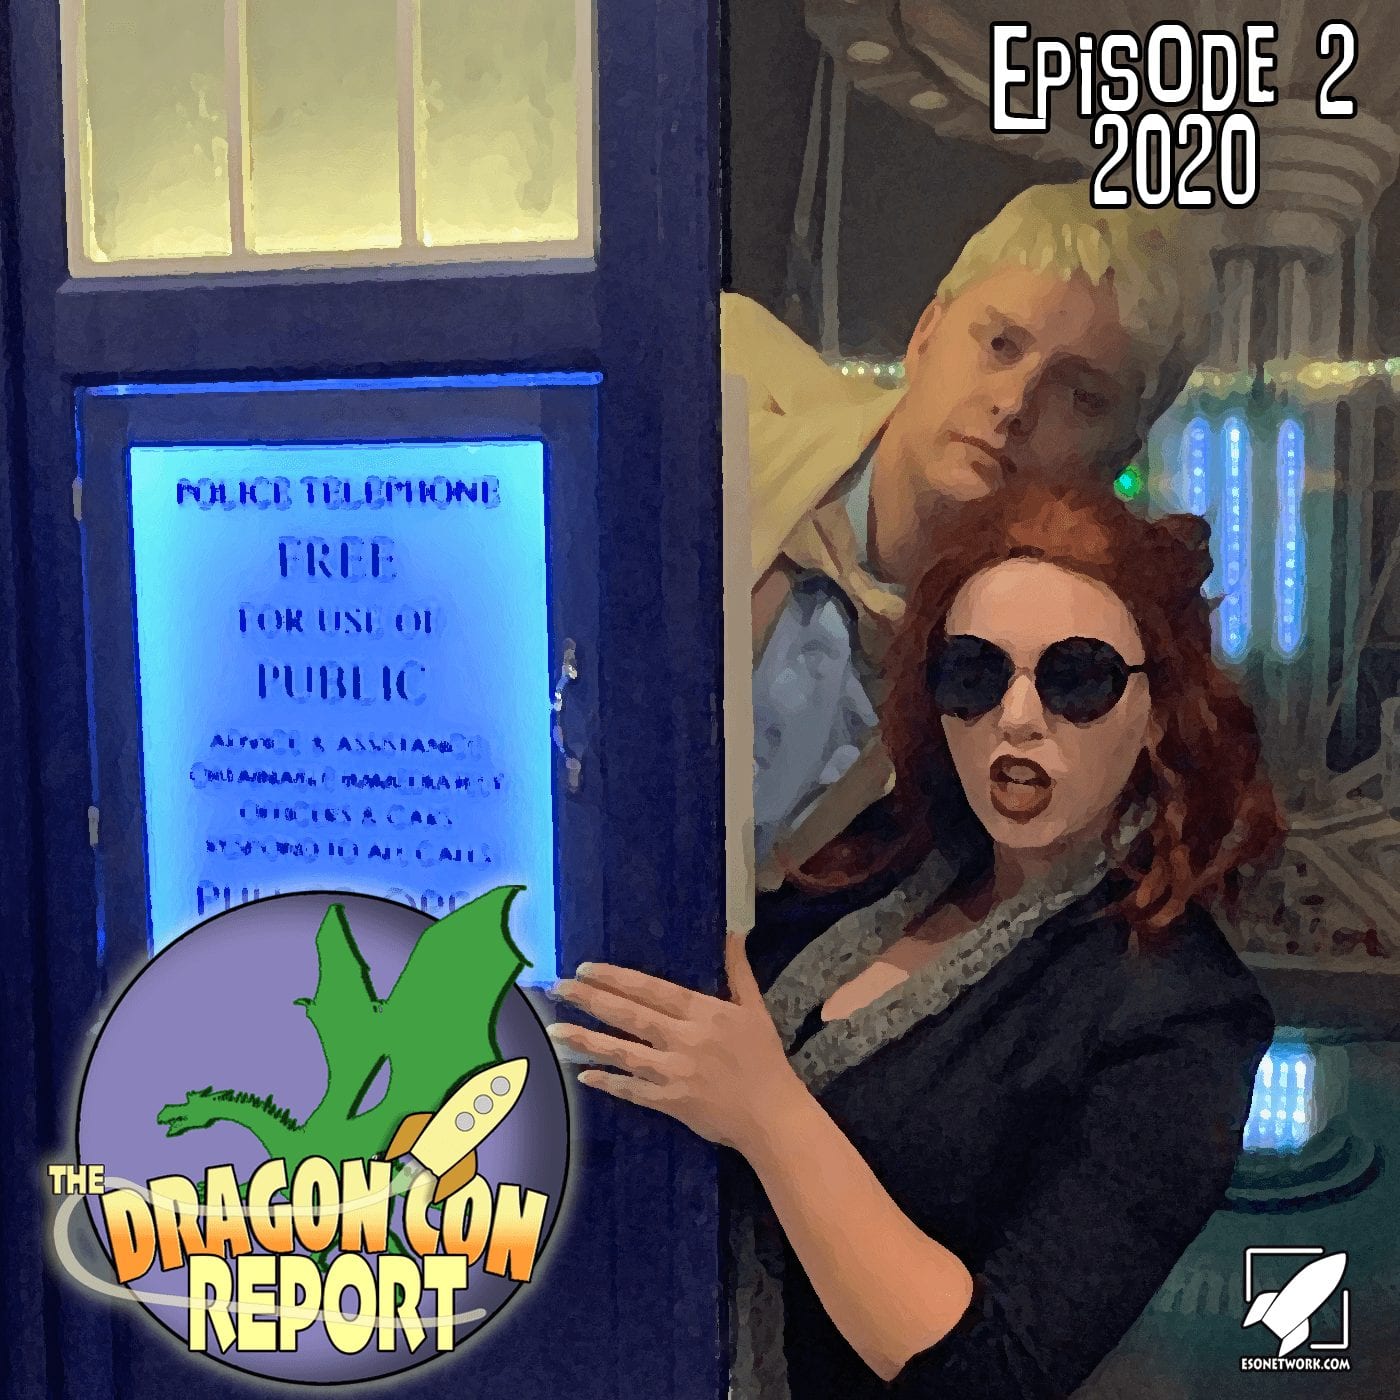 The 2020 Dragon Con Report Episode 2